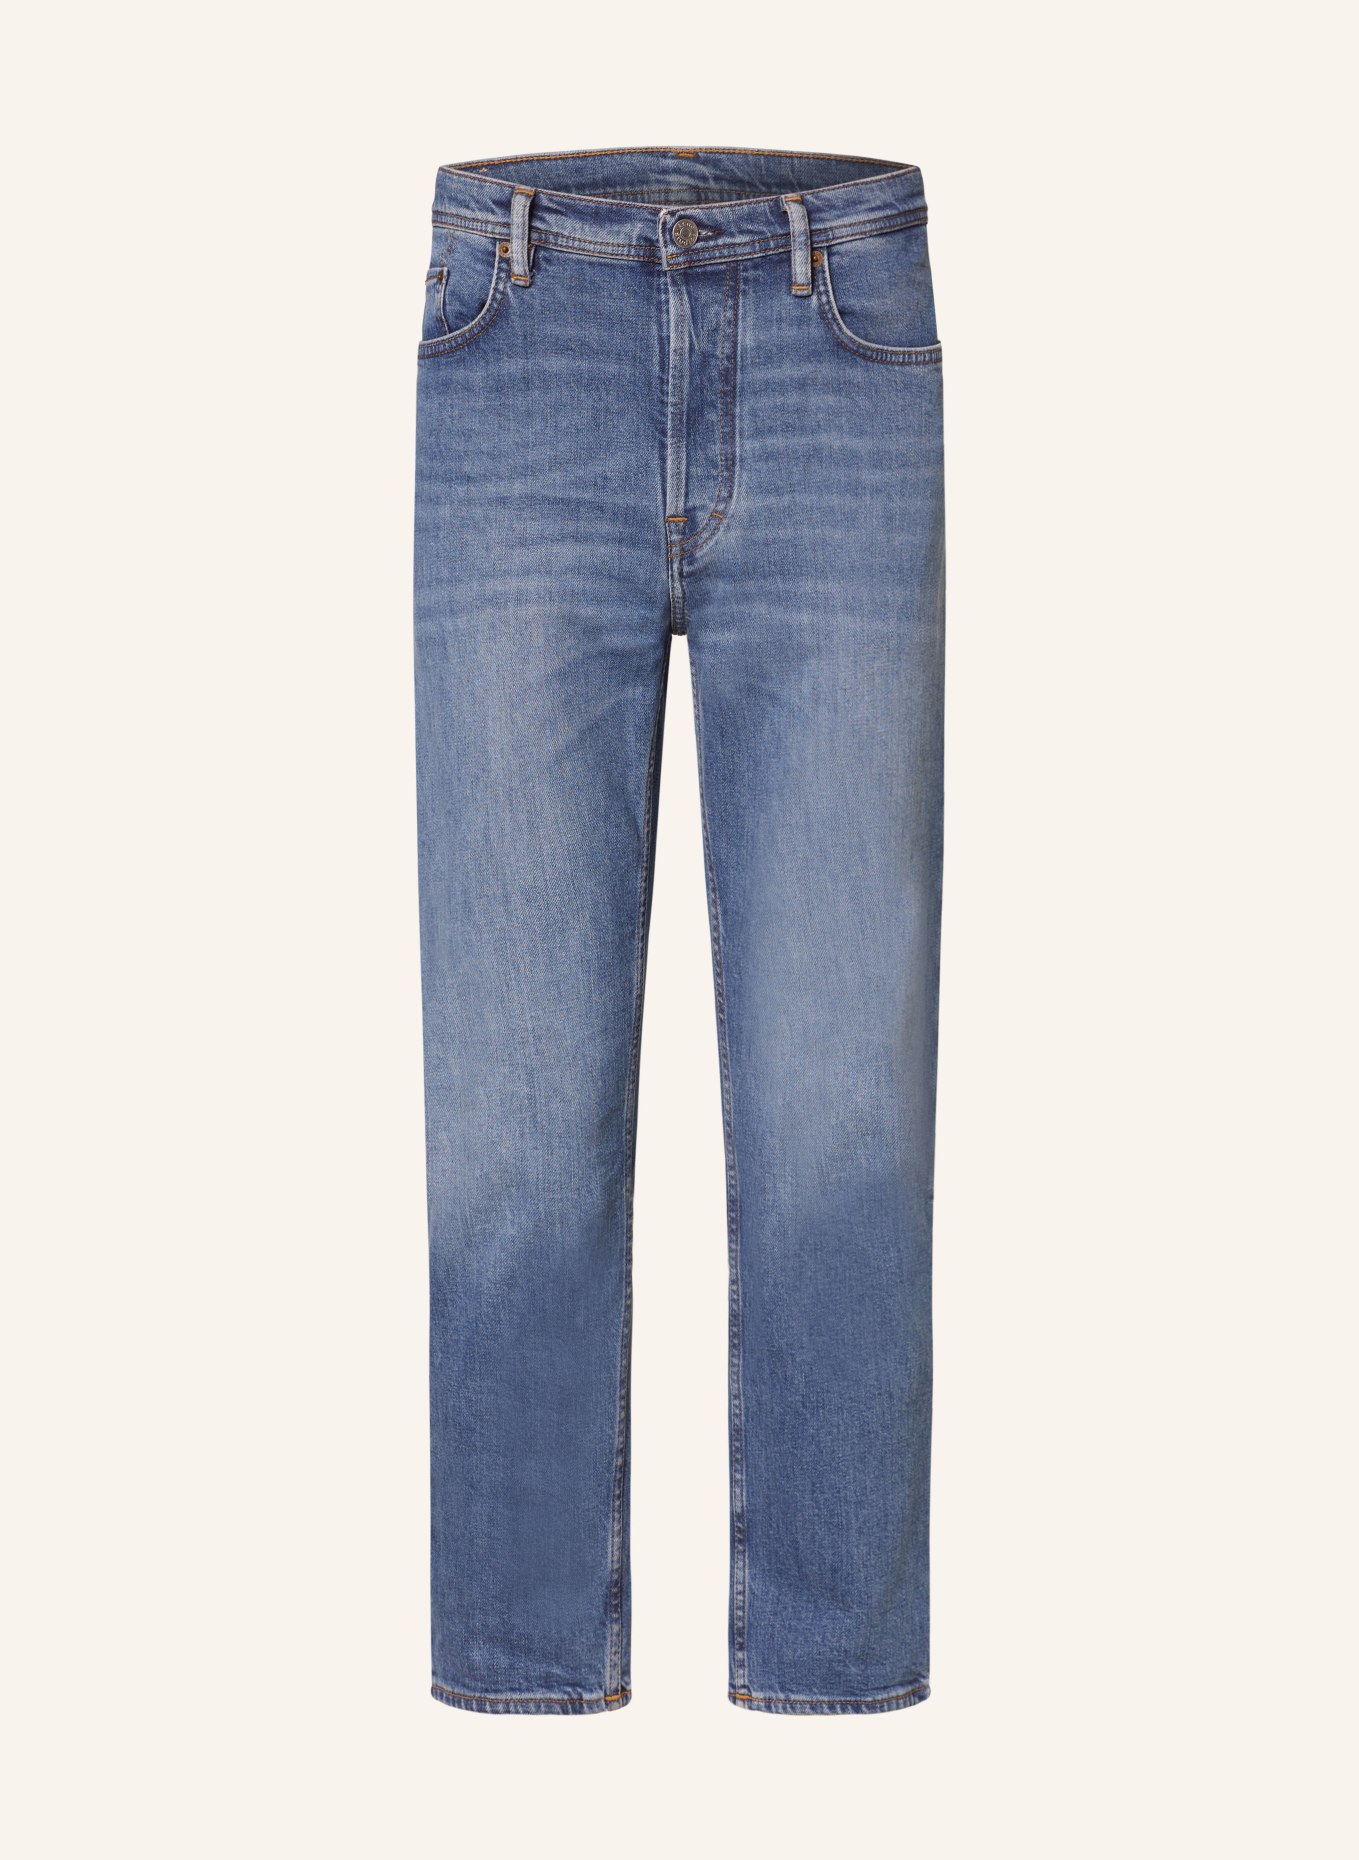 Acne Studios Skinny Jeans , Farbe: 863 MID BLUE (Bild 1)